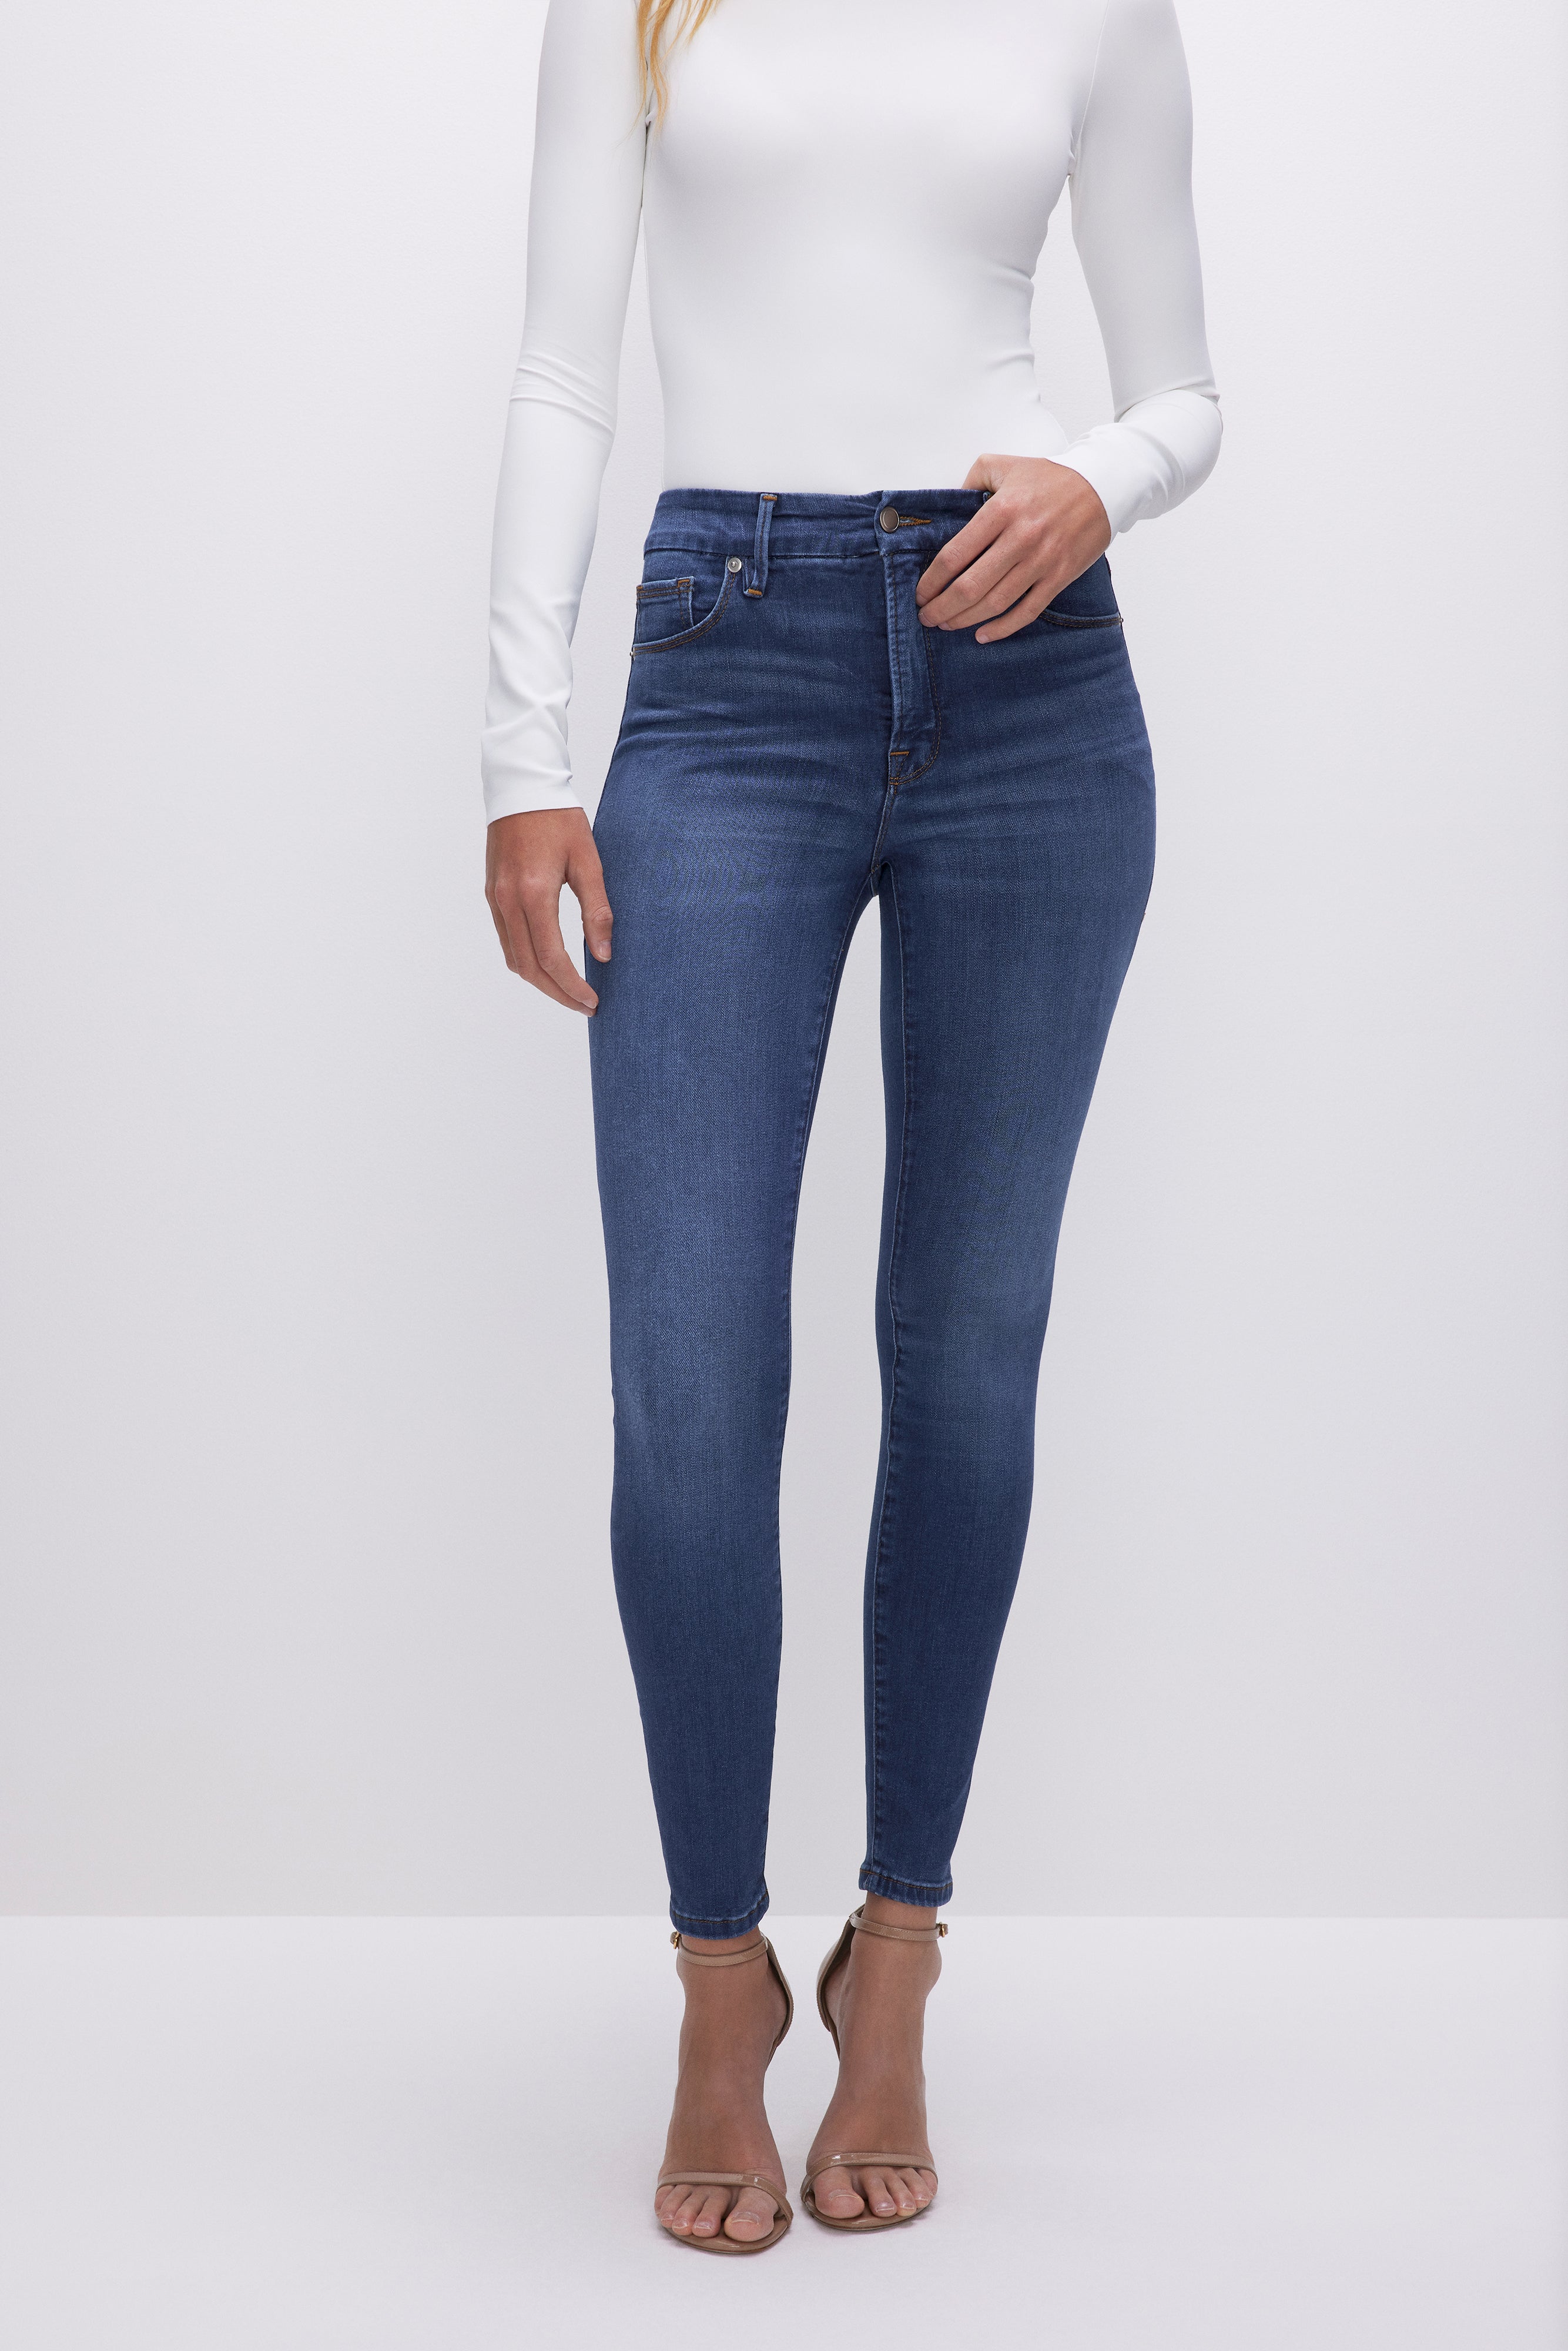 Blue Skinny Jeans for Women | SOUL OF NOMAD Women's Denim Akira Miramar